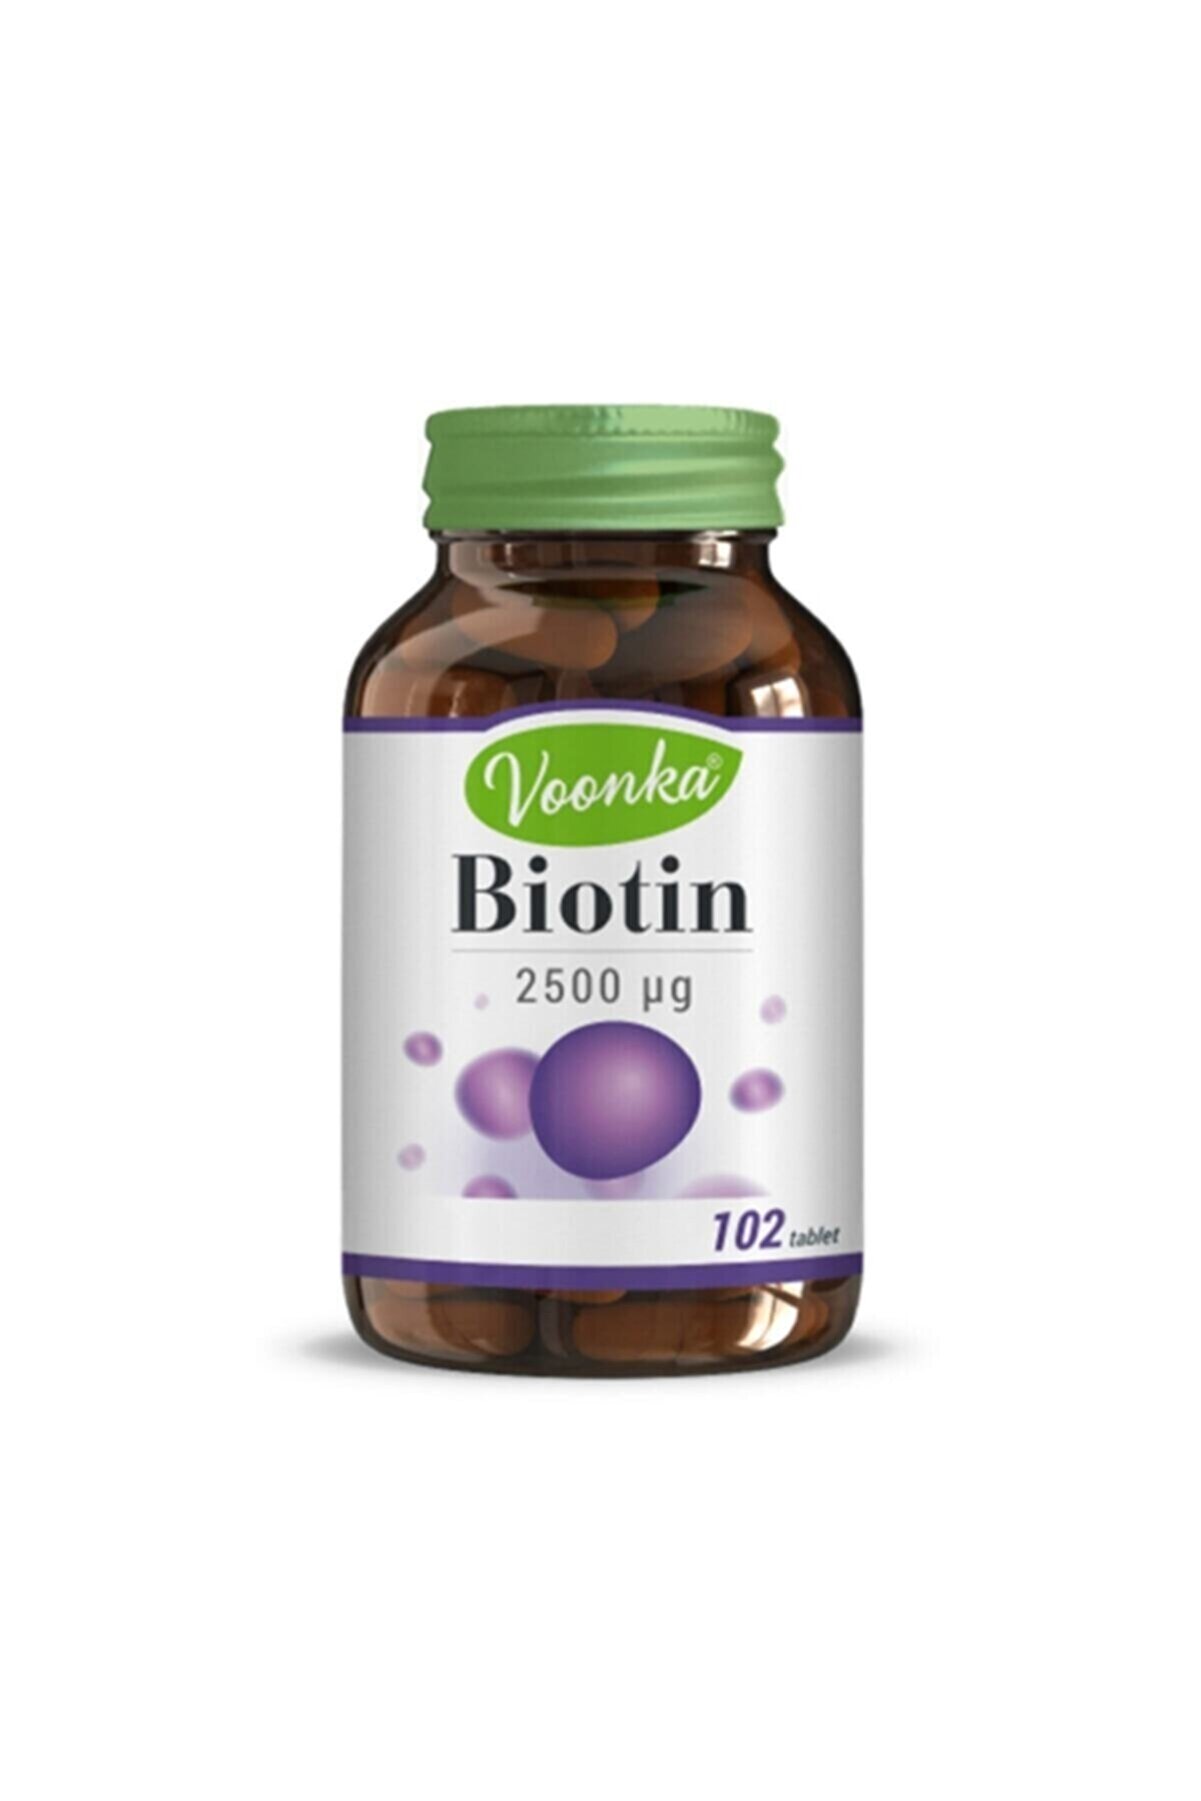 Voonka Biotin 2500 Mg 102 Tablet